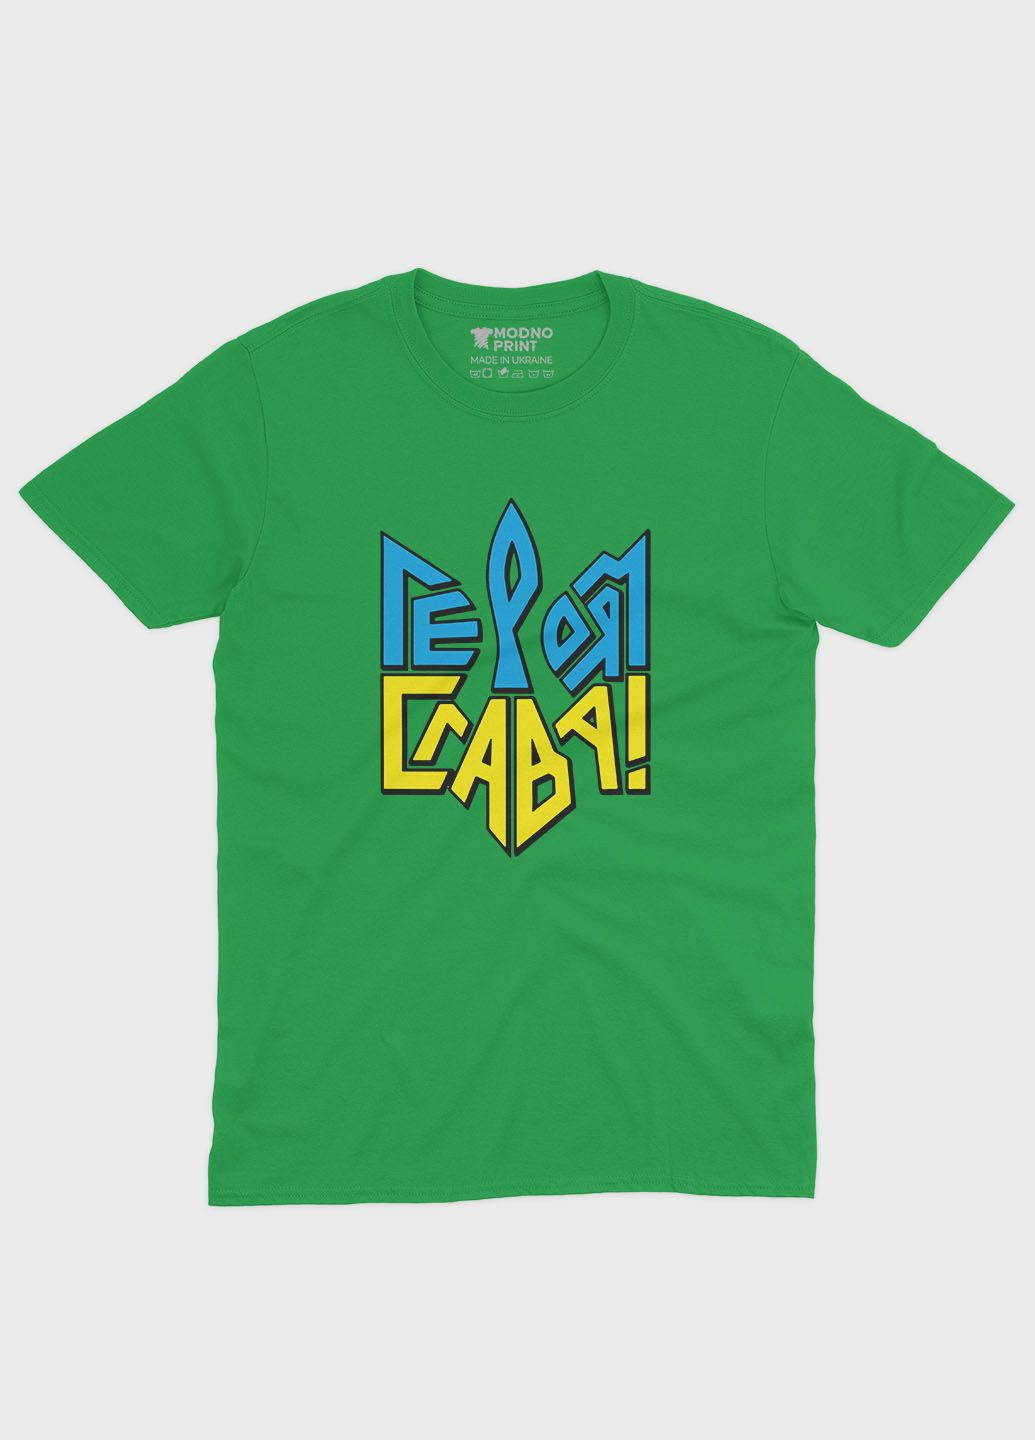 Зеленая демисезонная футболка для мальчика с патриотическим принтом гербтризуб (ts001-2-keg-005-1-038-b) Modno